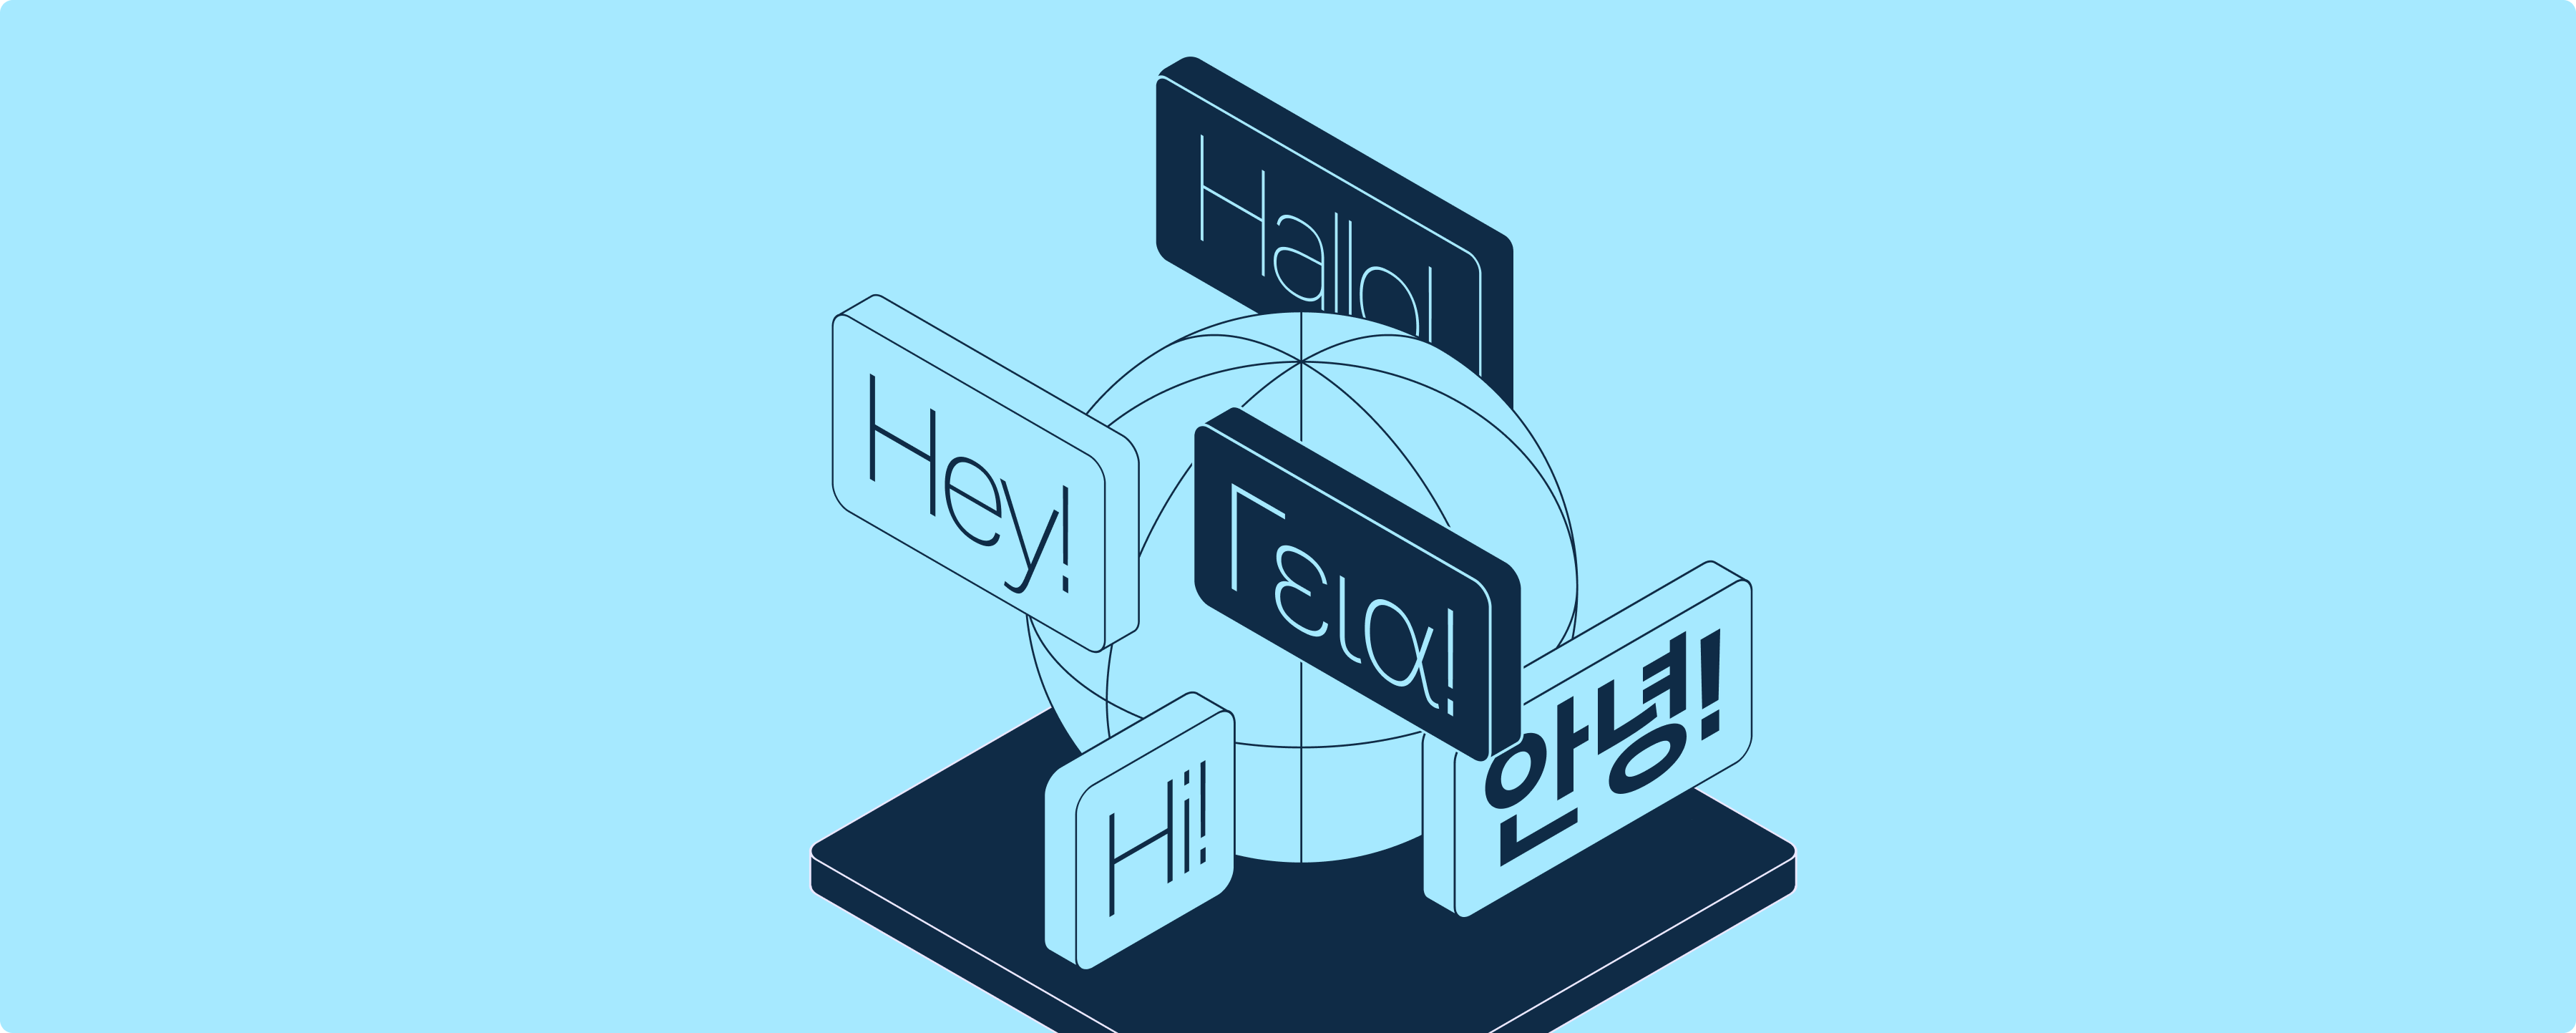 Afbeelding van een wereldbol omringd door het woord "hallo" in verschillende talen